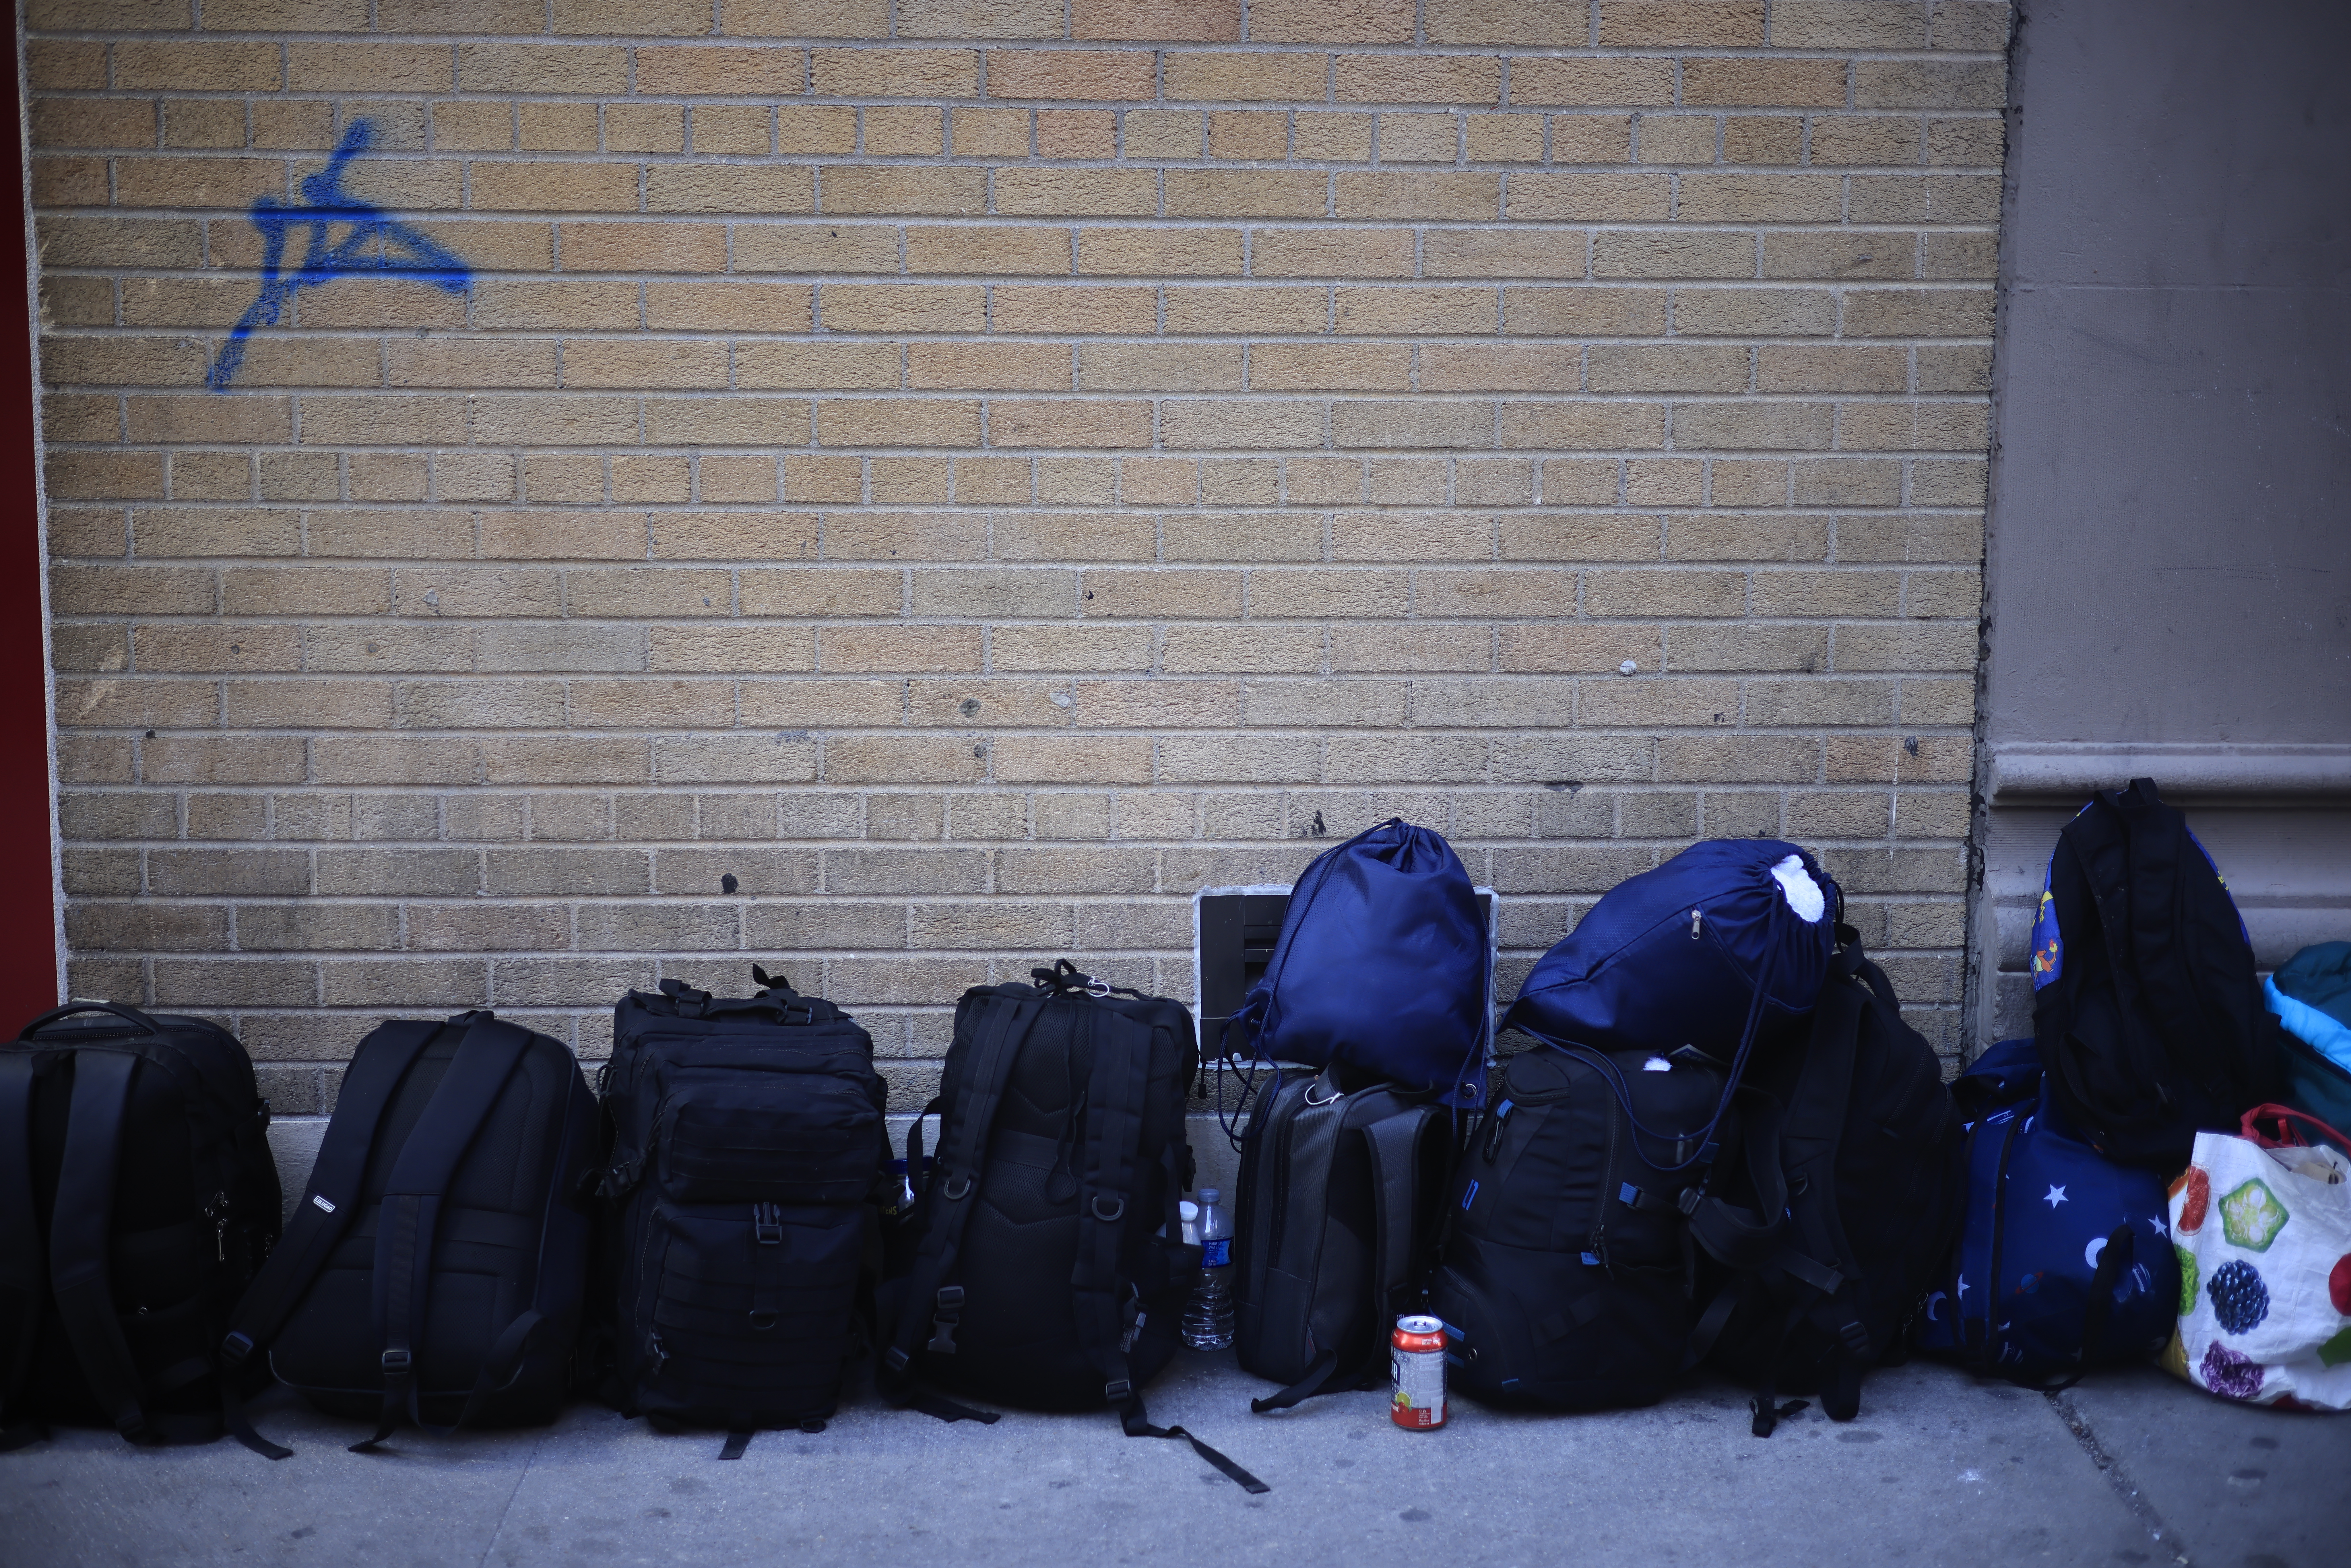 Las maletas de los migrantes recién llegados a Nueva York hacen fila para poder ingresar al albergue a resguardarse del frío. Nueva York,13 de febrero de 2024. Foto CC/Jorge Cabrera.